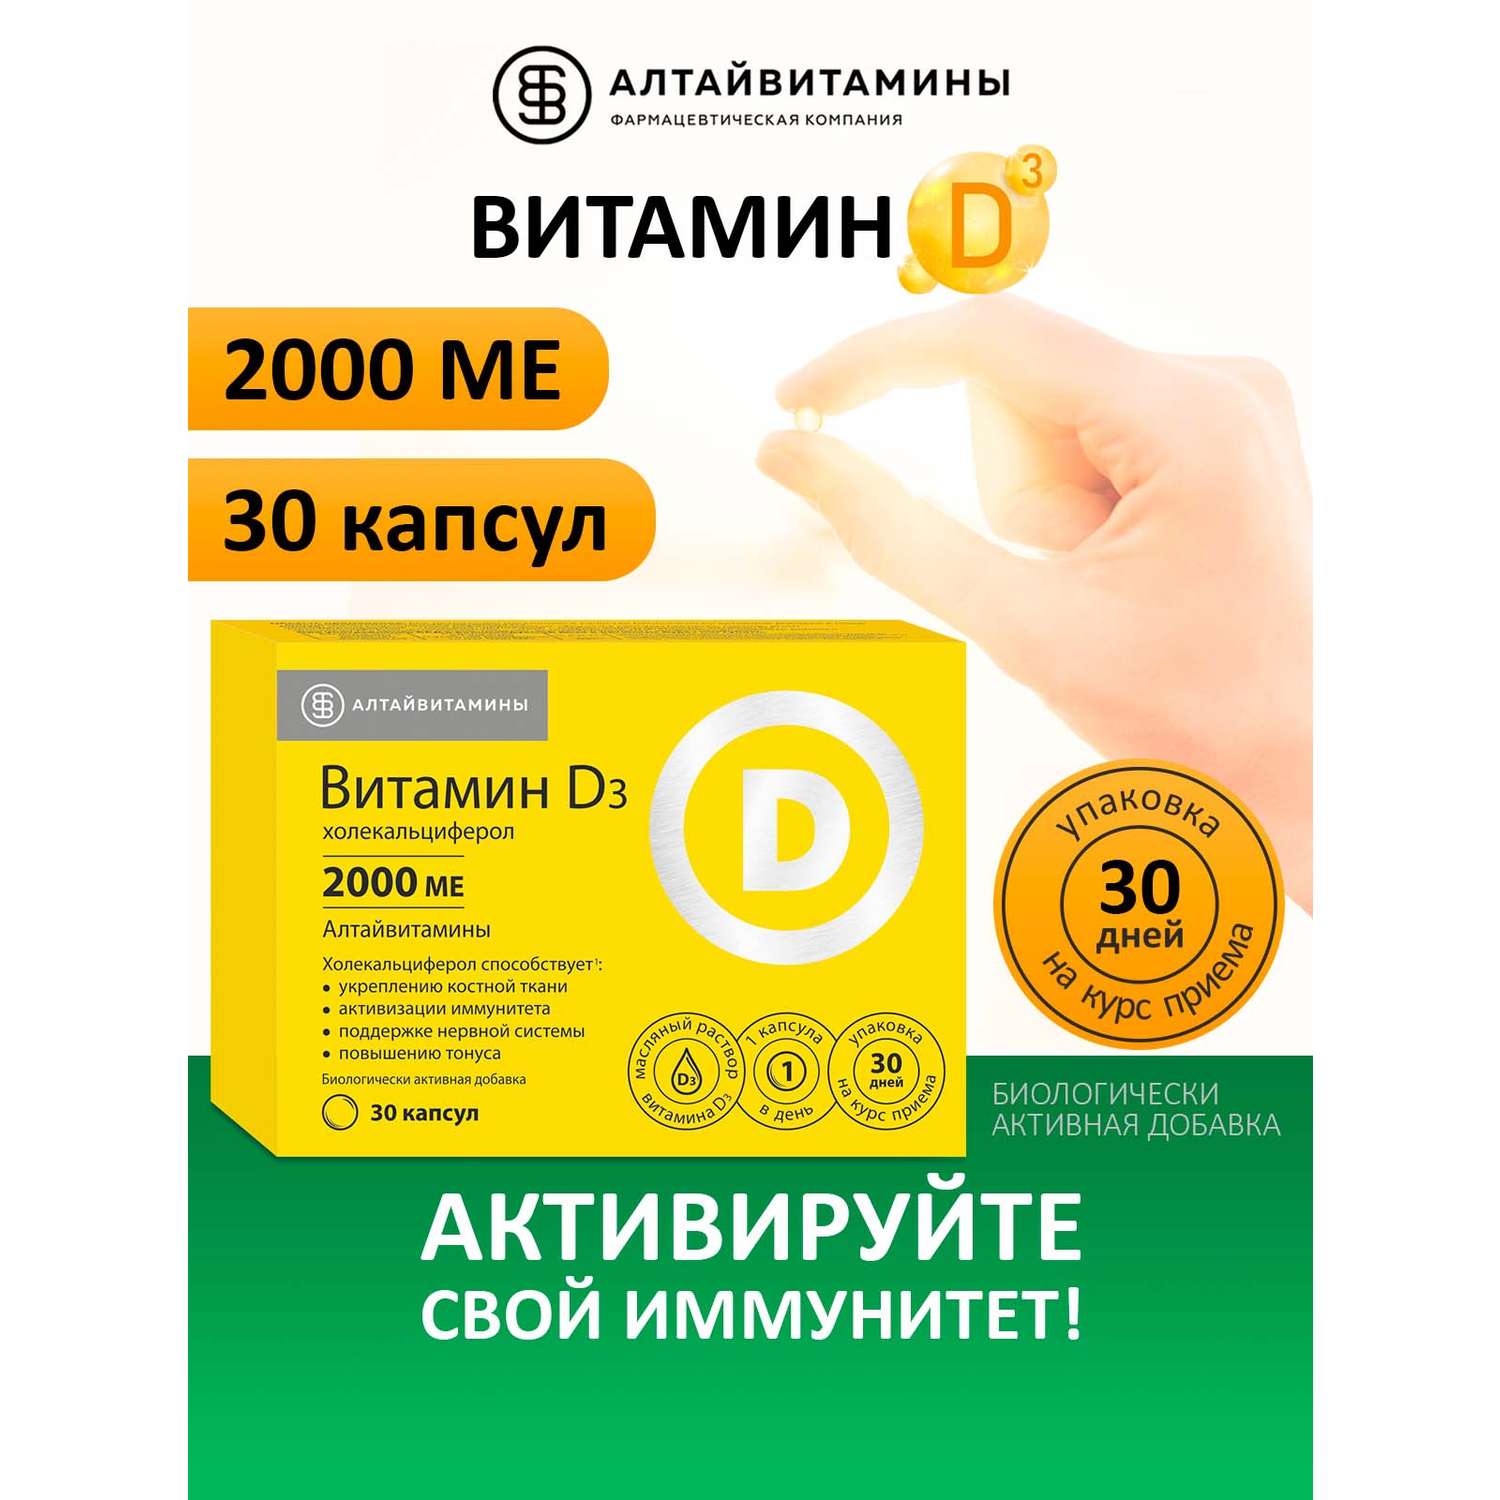 Витамин Д3 2000 МЕ Алтайвитамины 30 капсул - фото 2